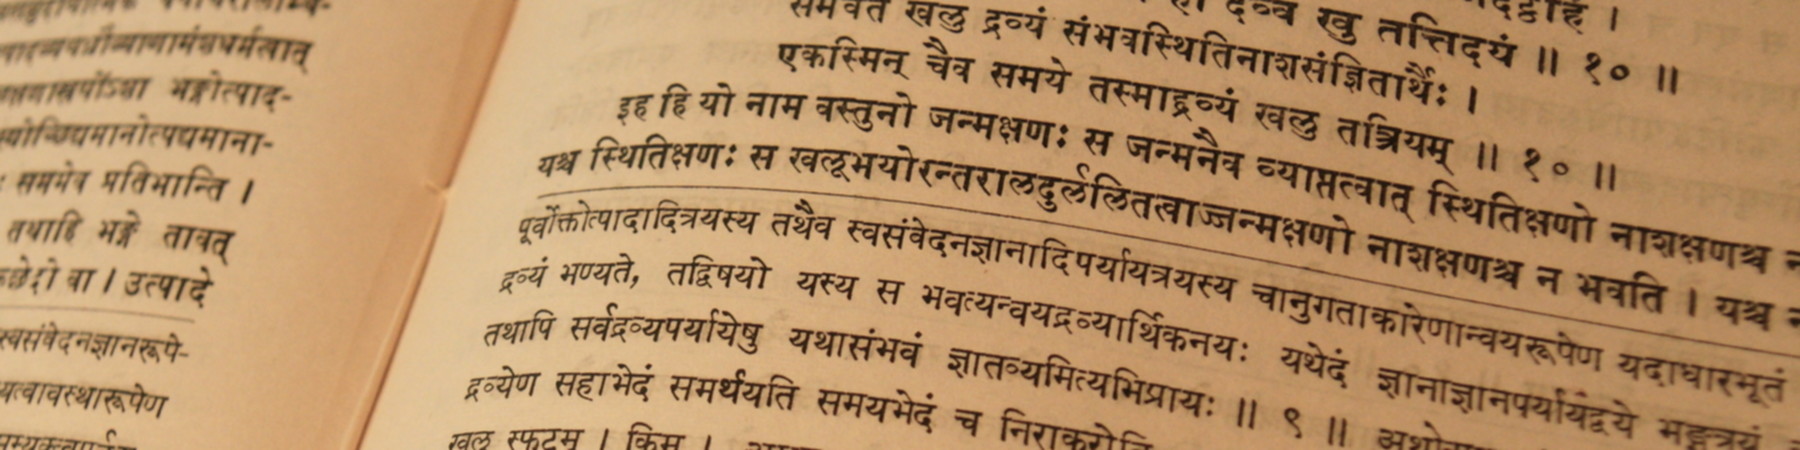 Texte en sanskrit